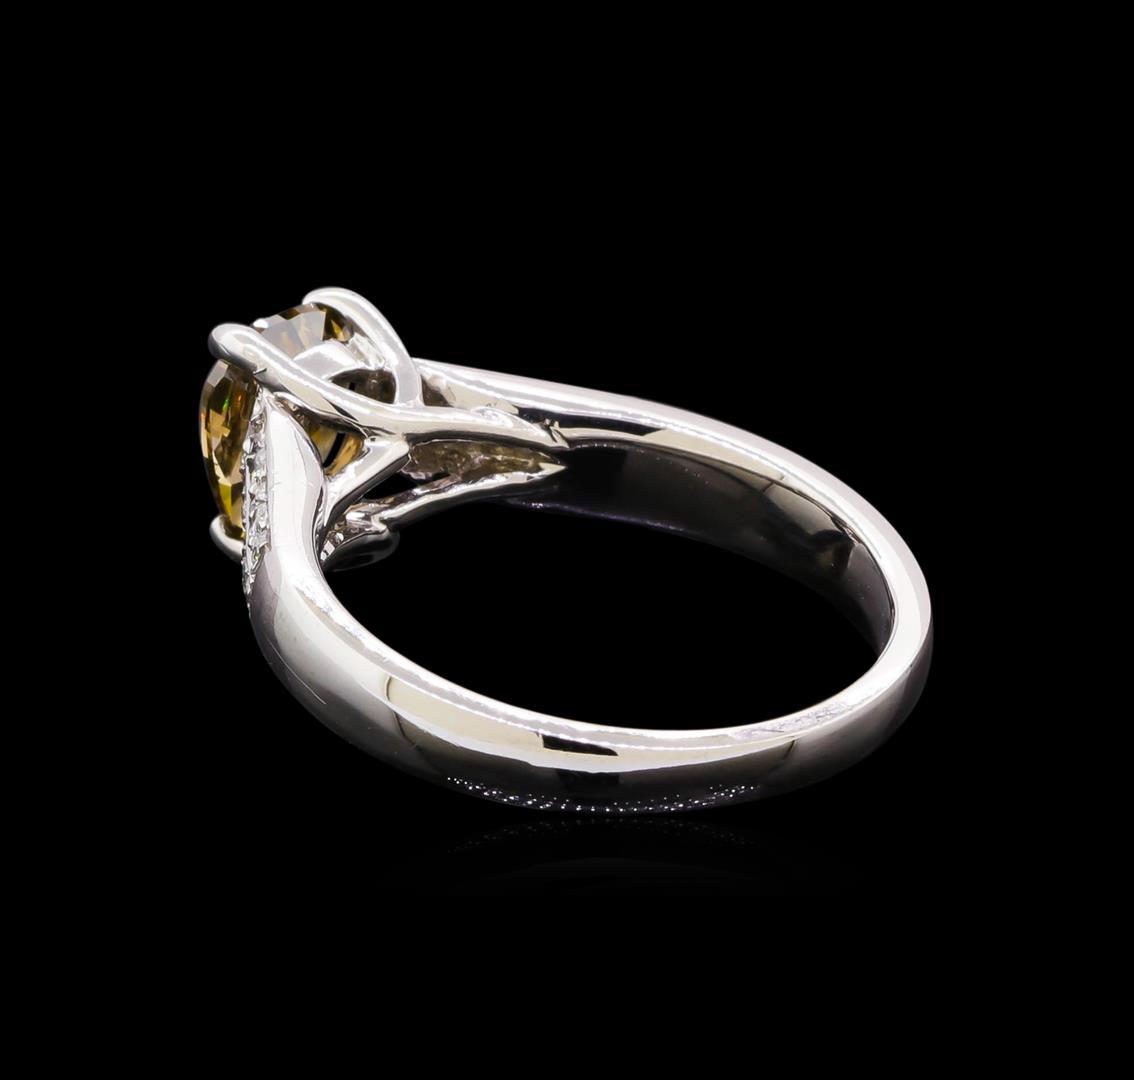 1.28 ctw Diamond Ring - 14KT White Gold